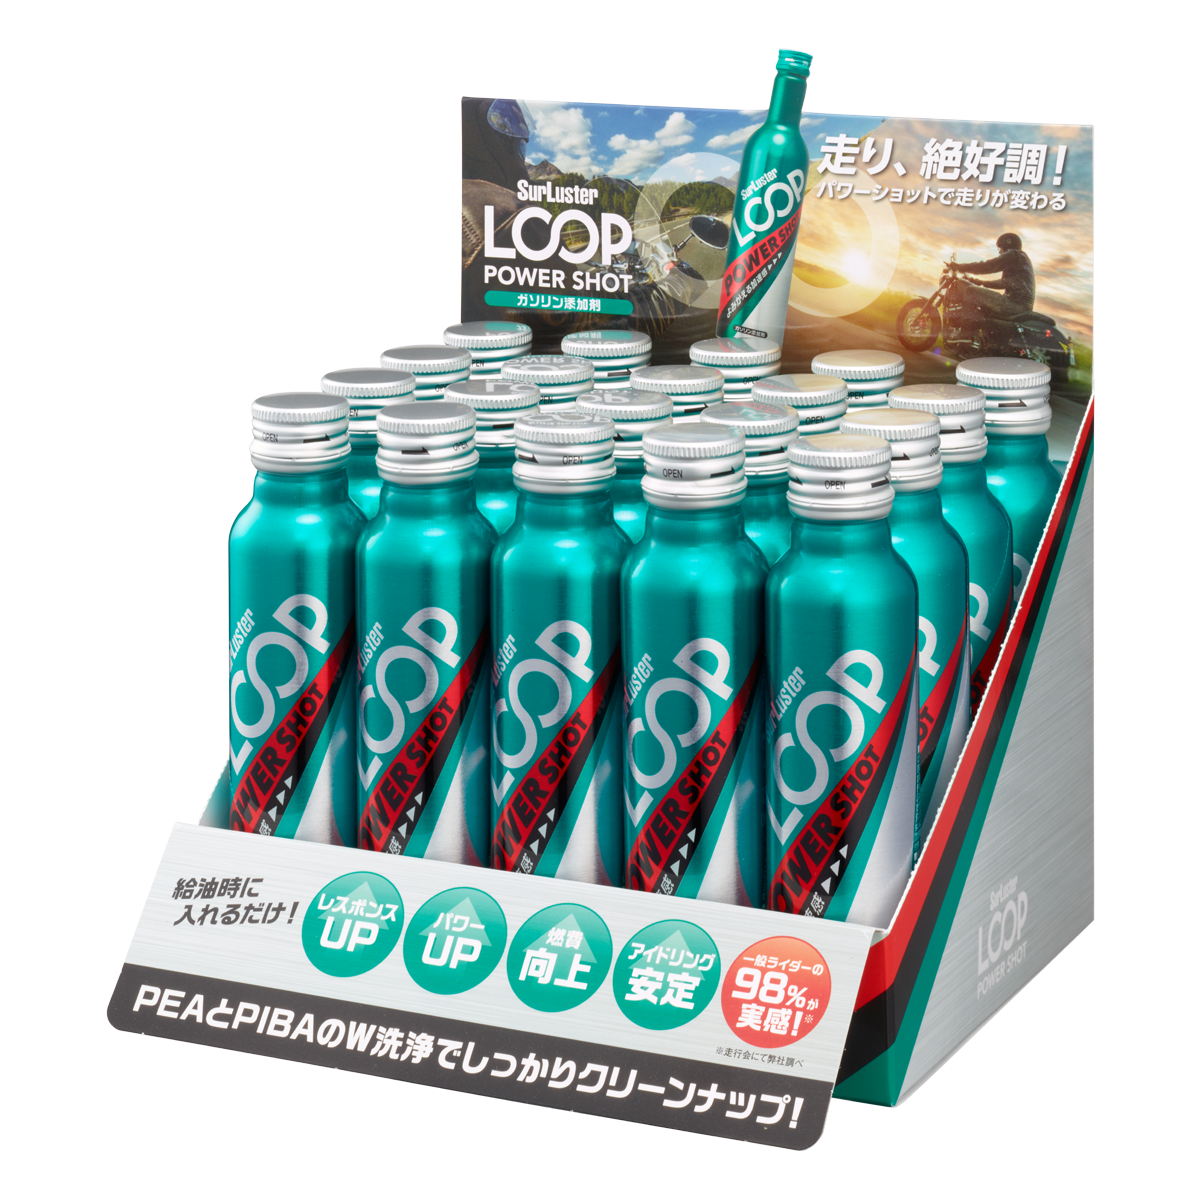 シュアラスター ガソリン添加剤 LOOP パワーショット - 1